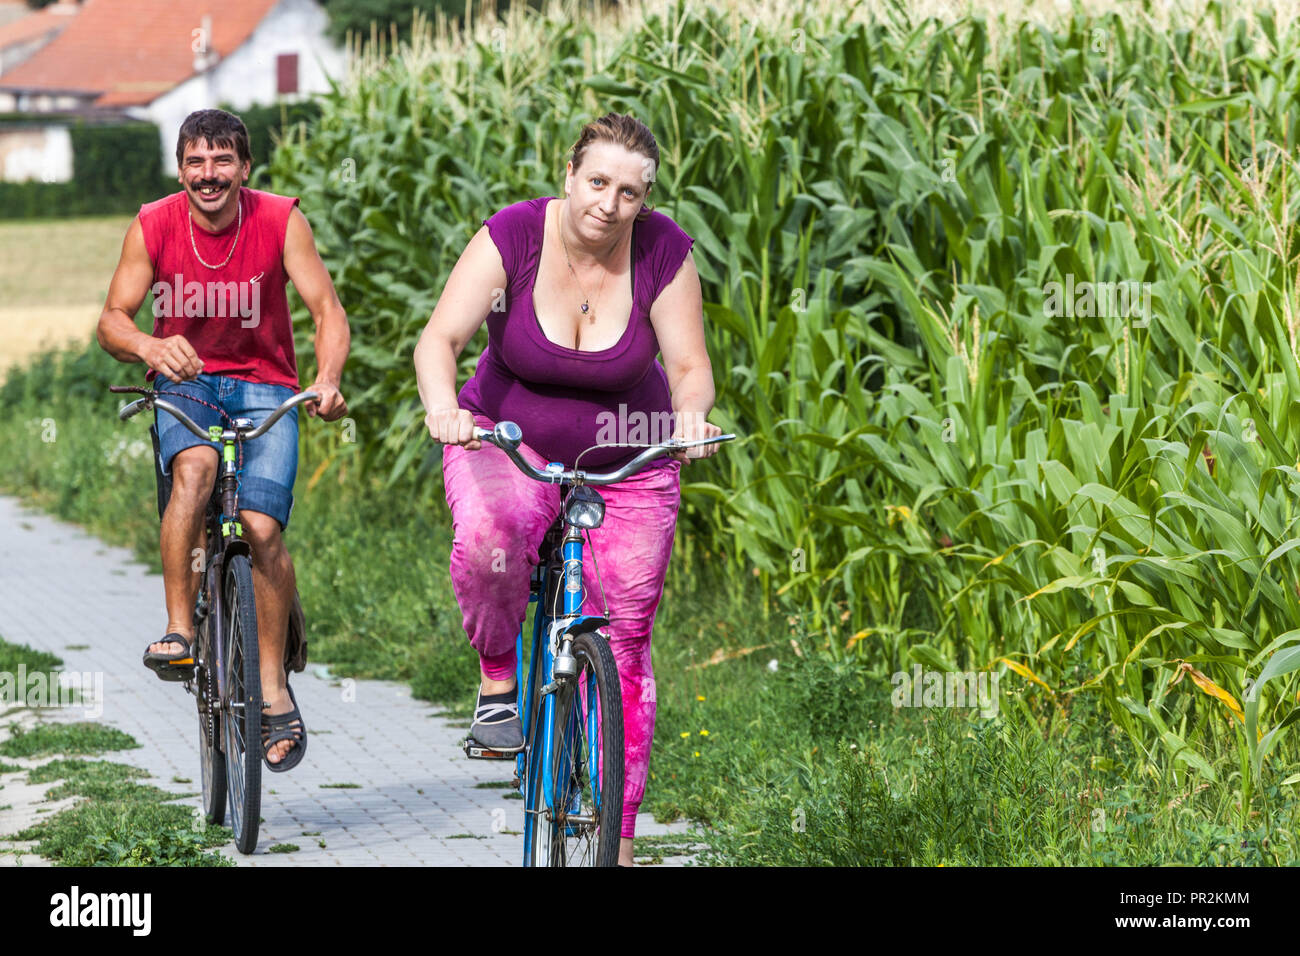 La vie des tchèques, homme souriant et femme obèse à vélo, à vélo dans le cornfield, campagne morave République tchèque à vélo en surpoids Banque D'Images